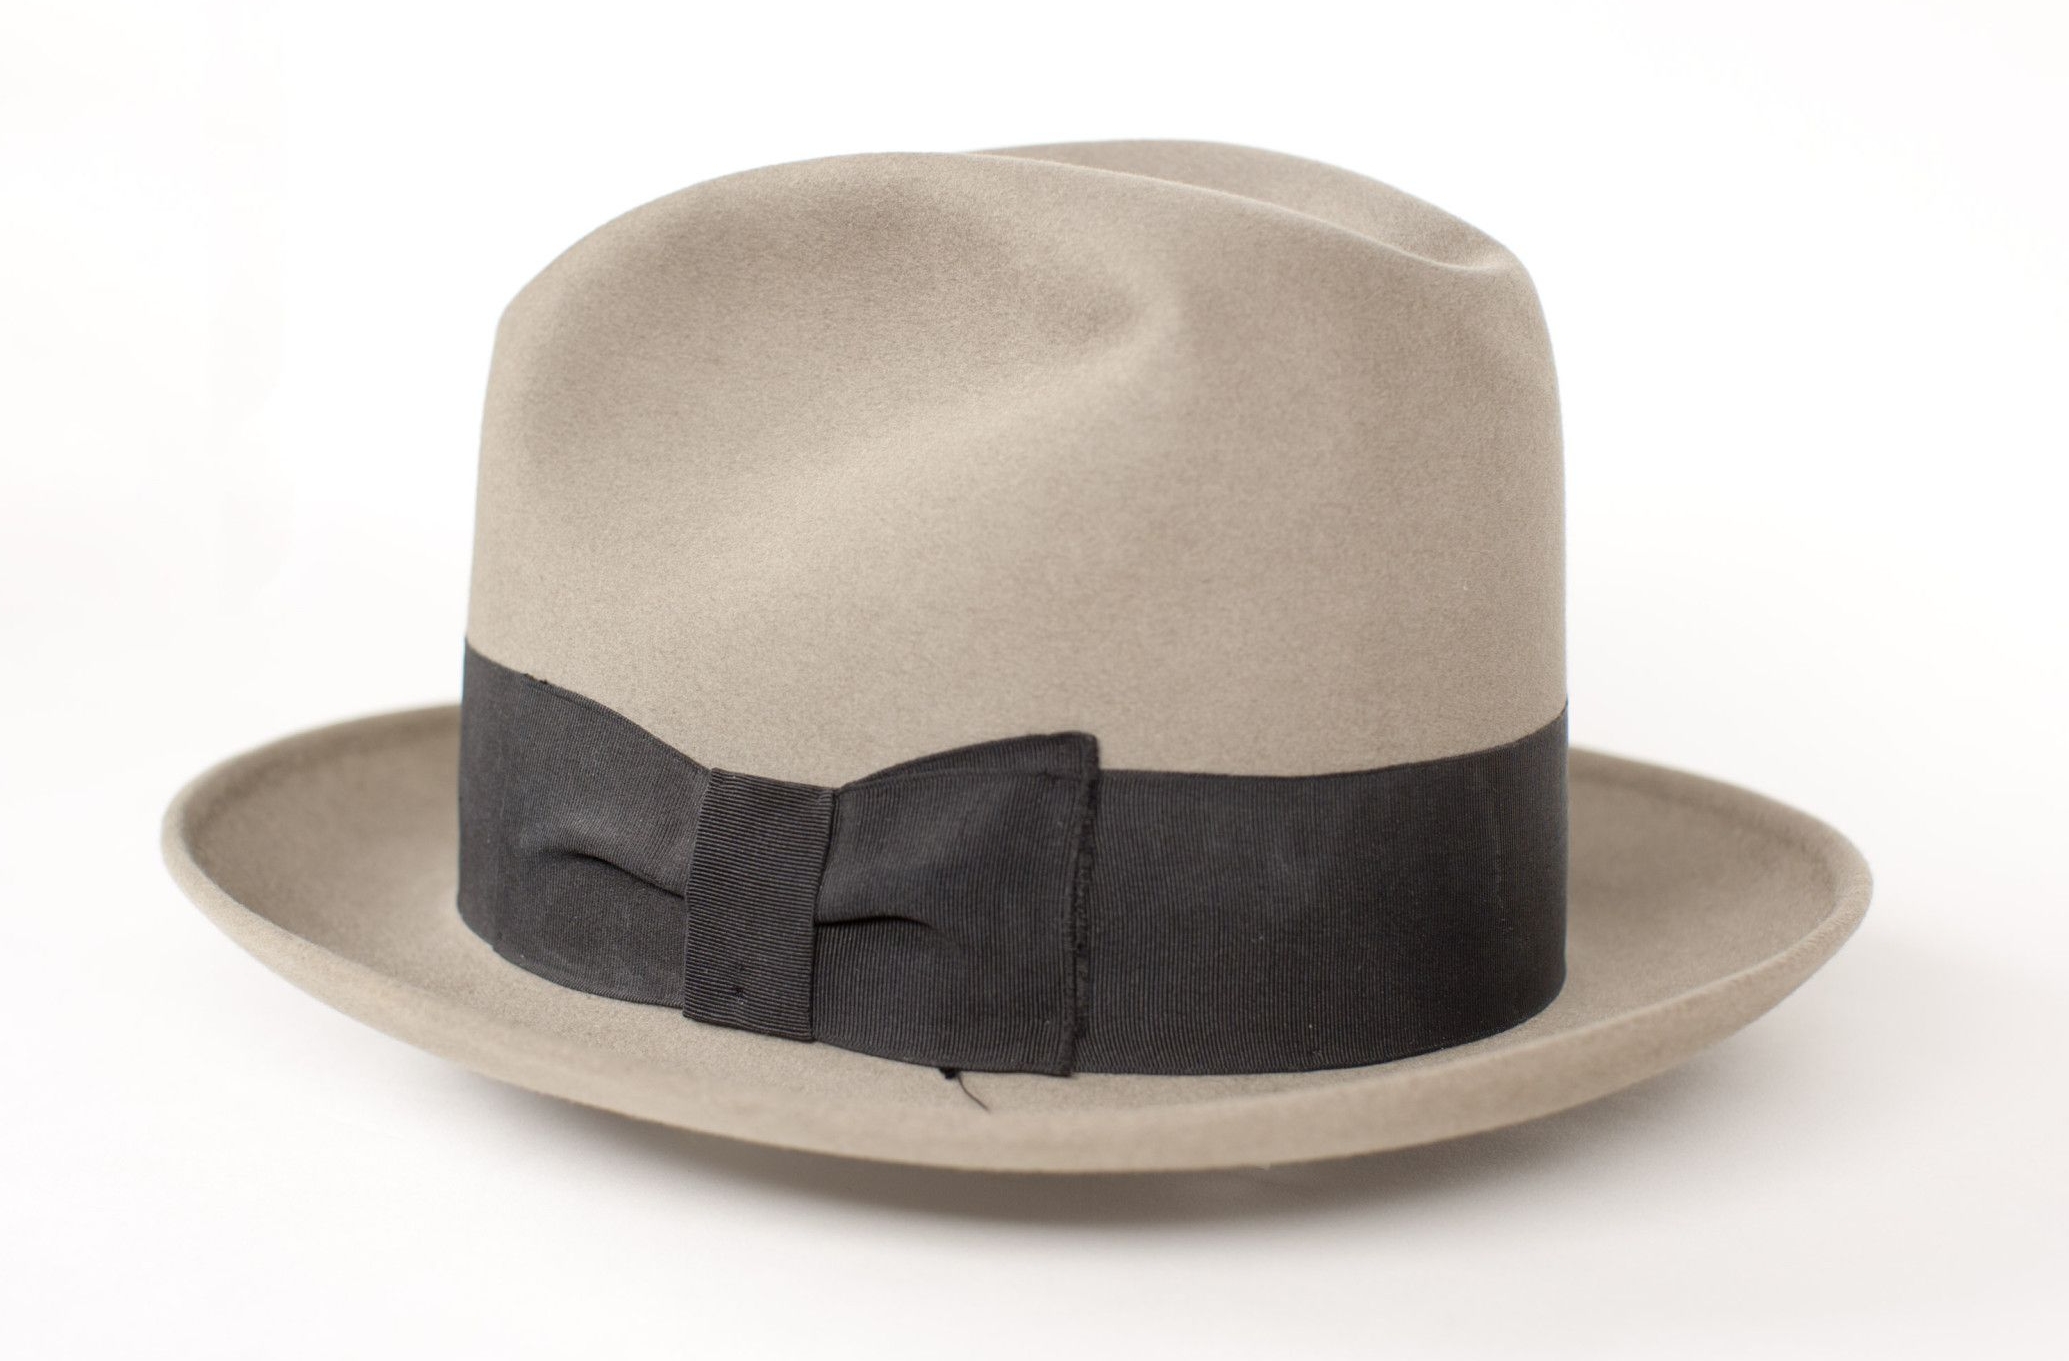 Felt Hat Belonging to Franklin D. Roosevelt